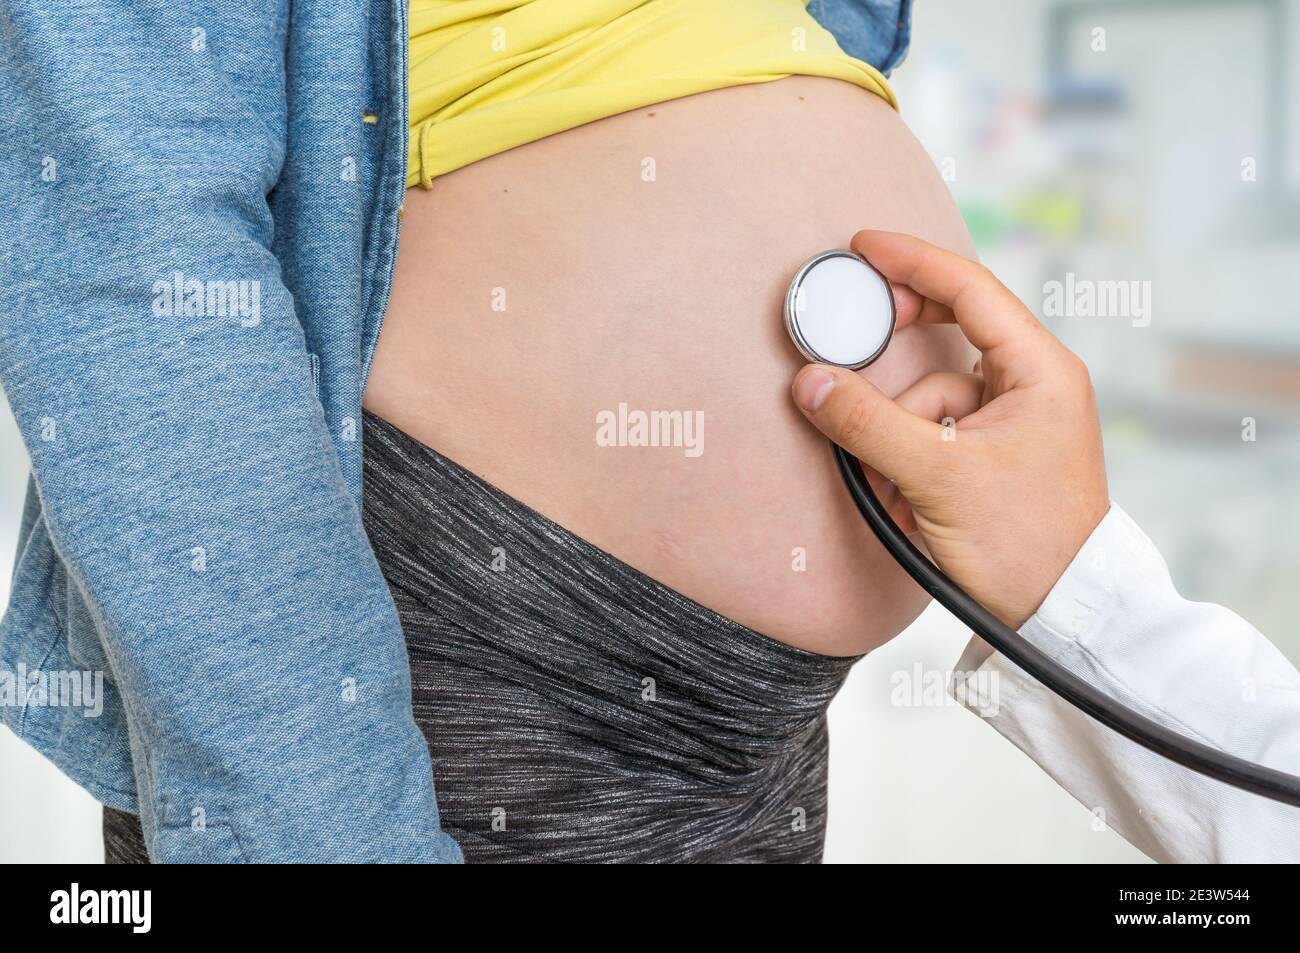 Kinderarzt Arzt mit Stethoskop hört Herzschlag Baby Schwangere Frau -  Schwangerschaft Konzept Stockfotografie - Alamy